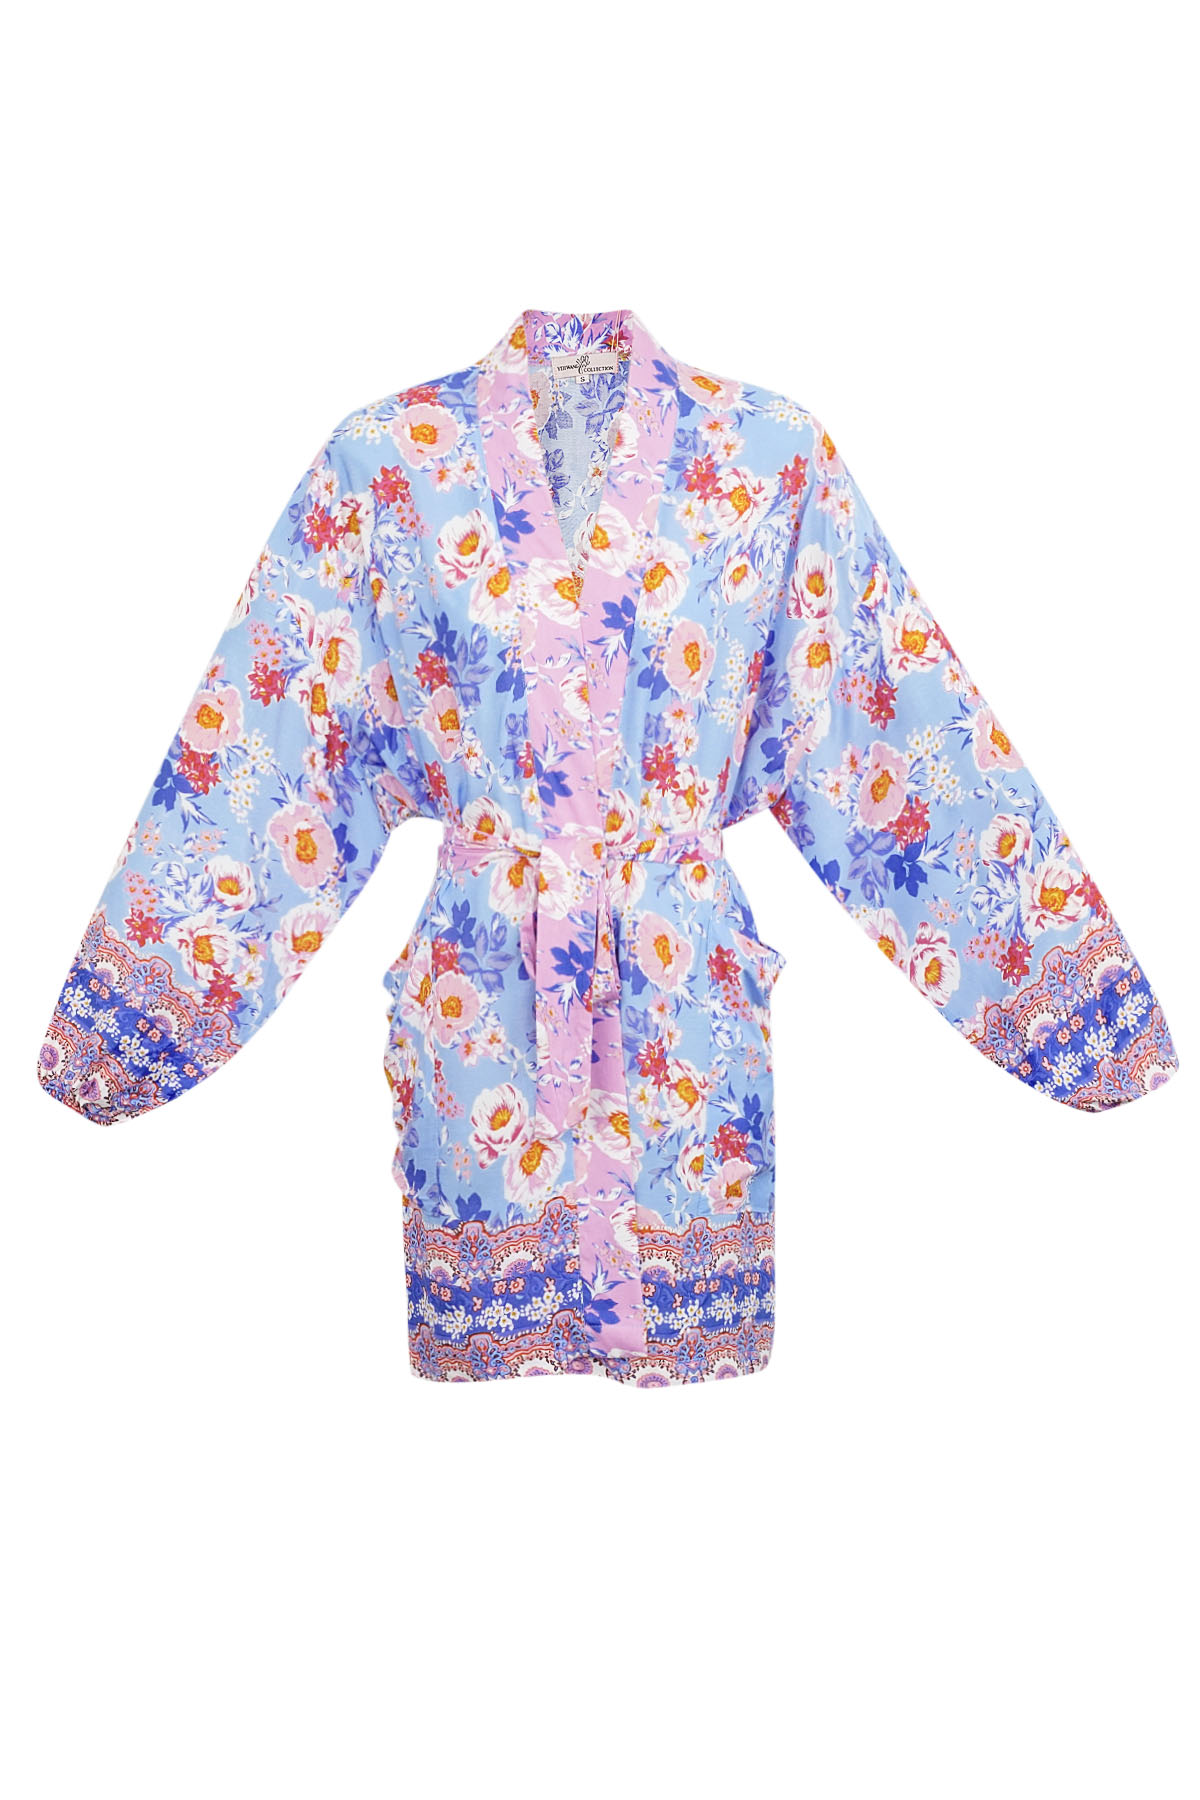 Kimono corto flores moradas - multi 